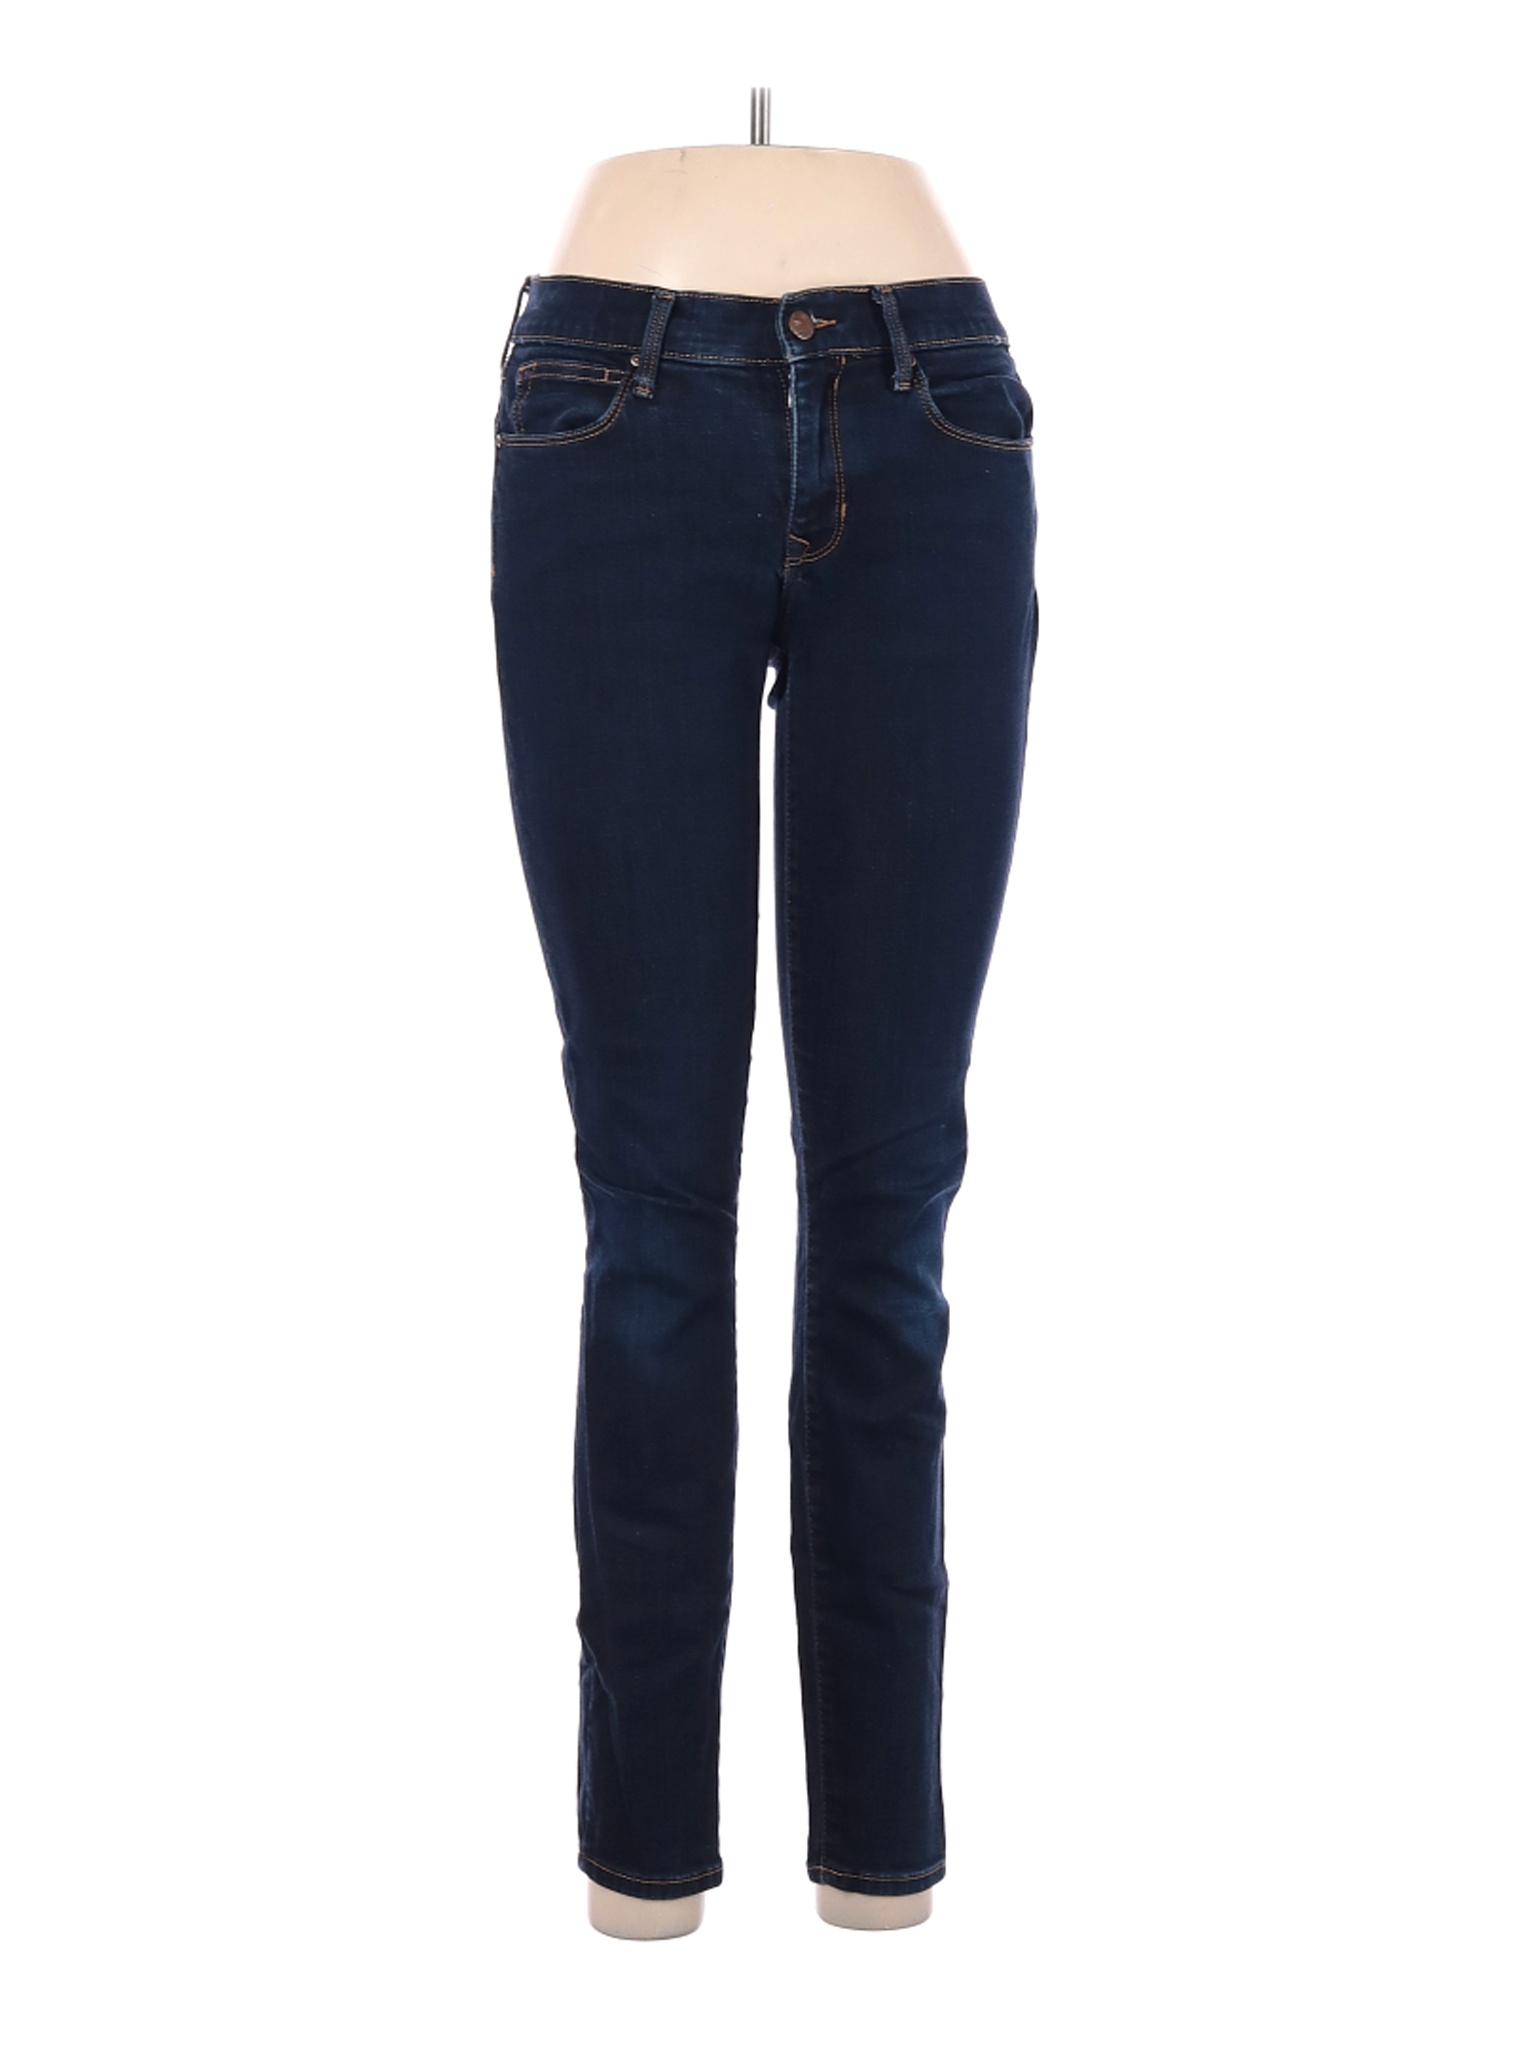 Gap Women Blue Jeans 28W | eBay